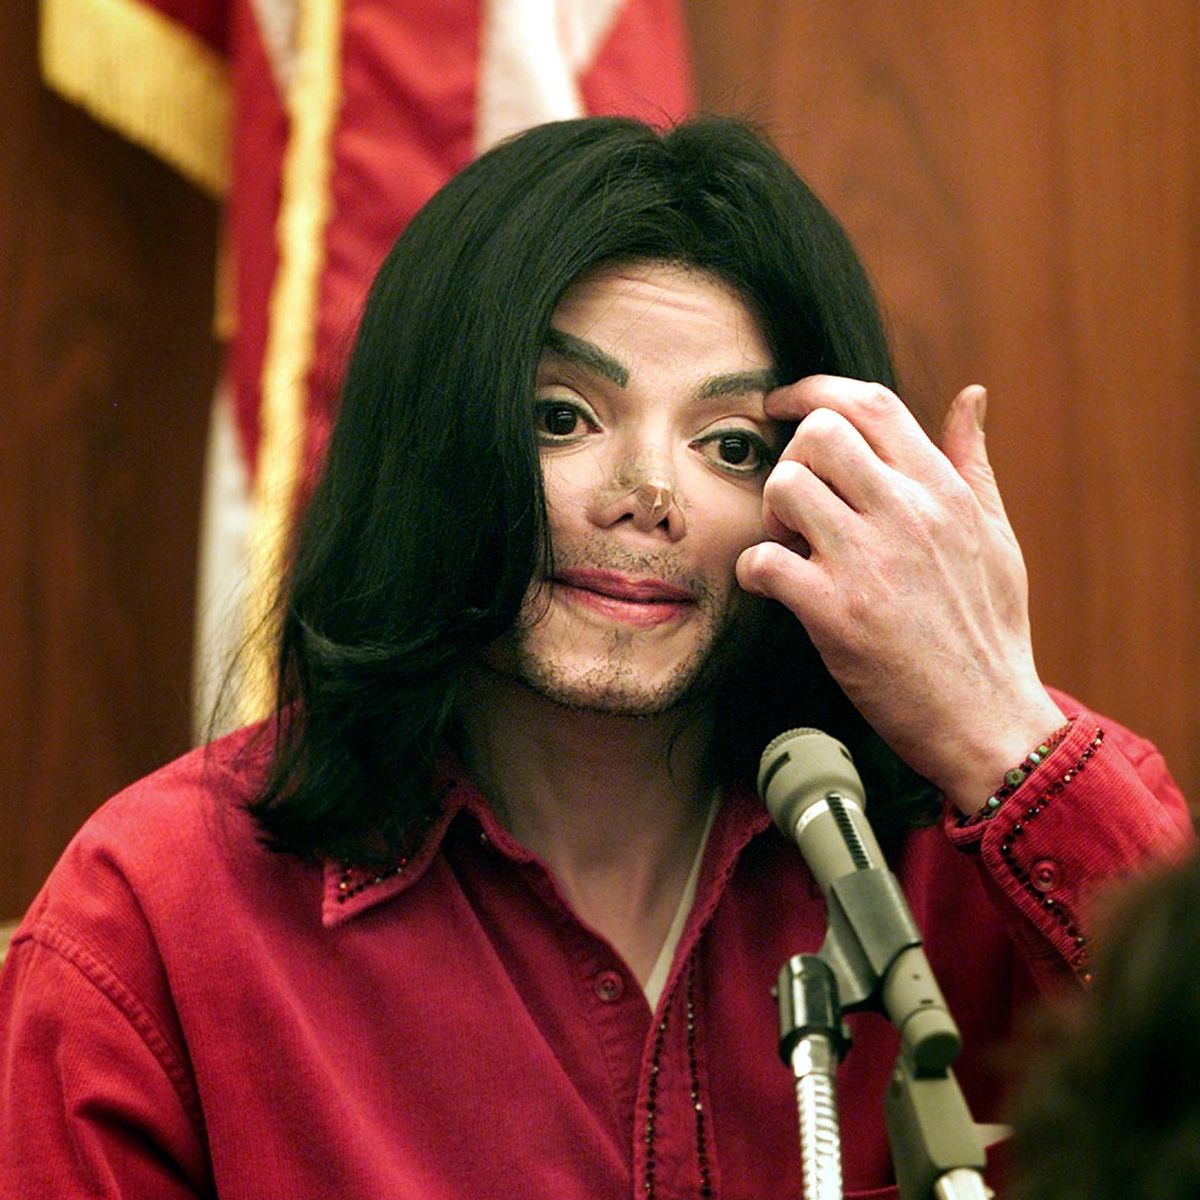 یکی از شاهدان عینی مدعی شده که مایکل جکسون هنگام مرگ بینی نداشته و در واقع از بینی مصنوعی استفاده می کرده است.